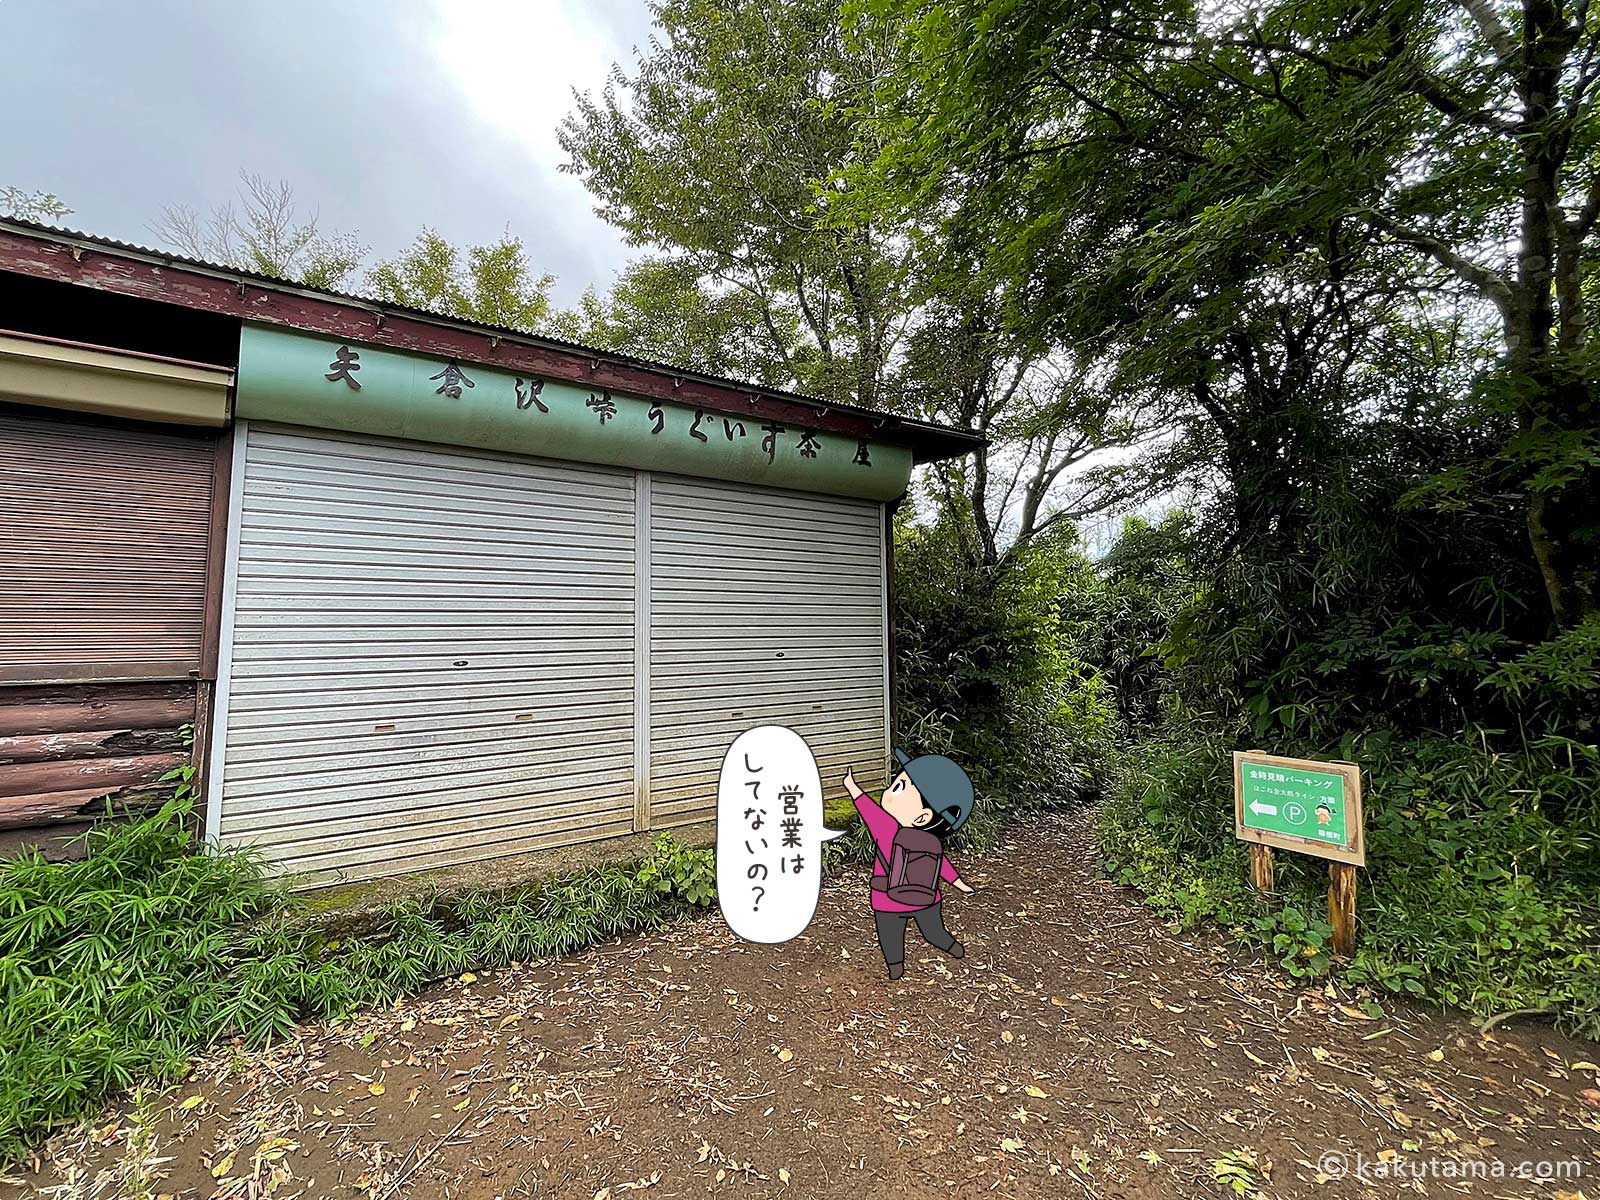 矢倉沢峠うぐいす茶屋の写真と登山者のイラスト